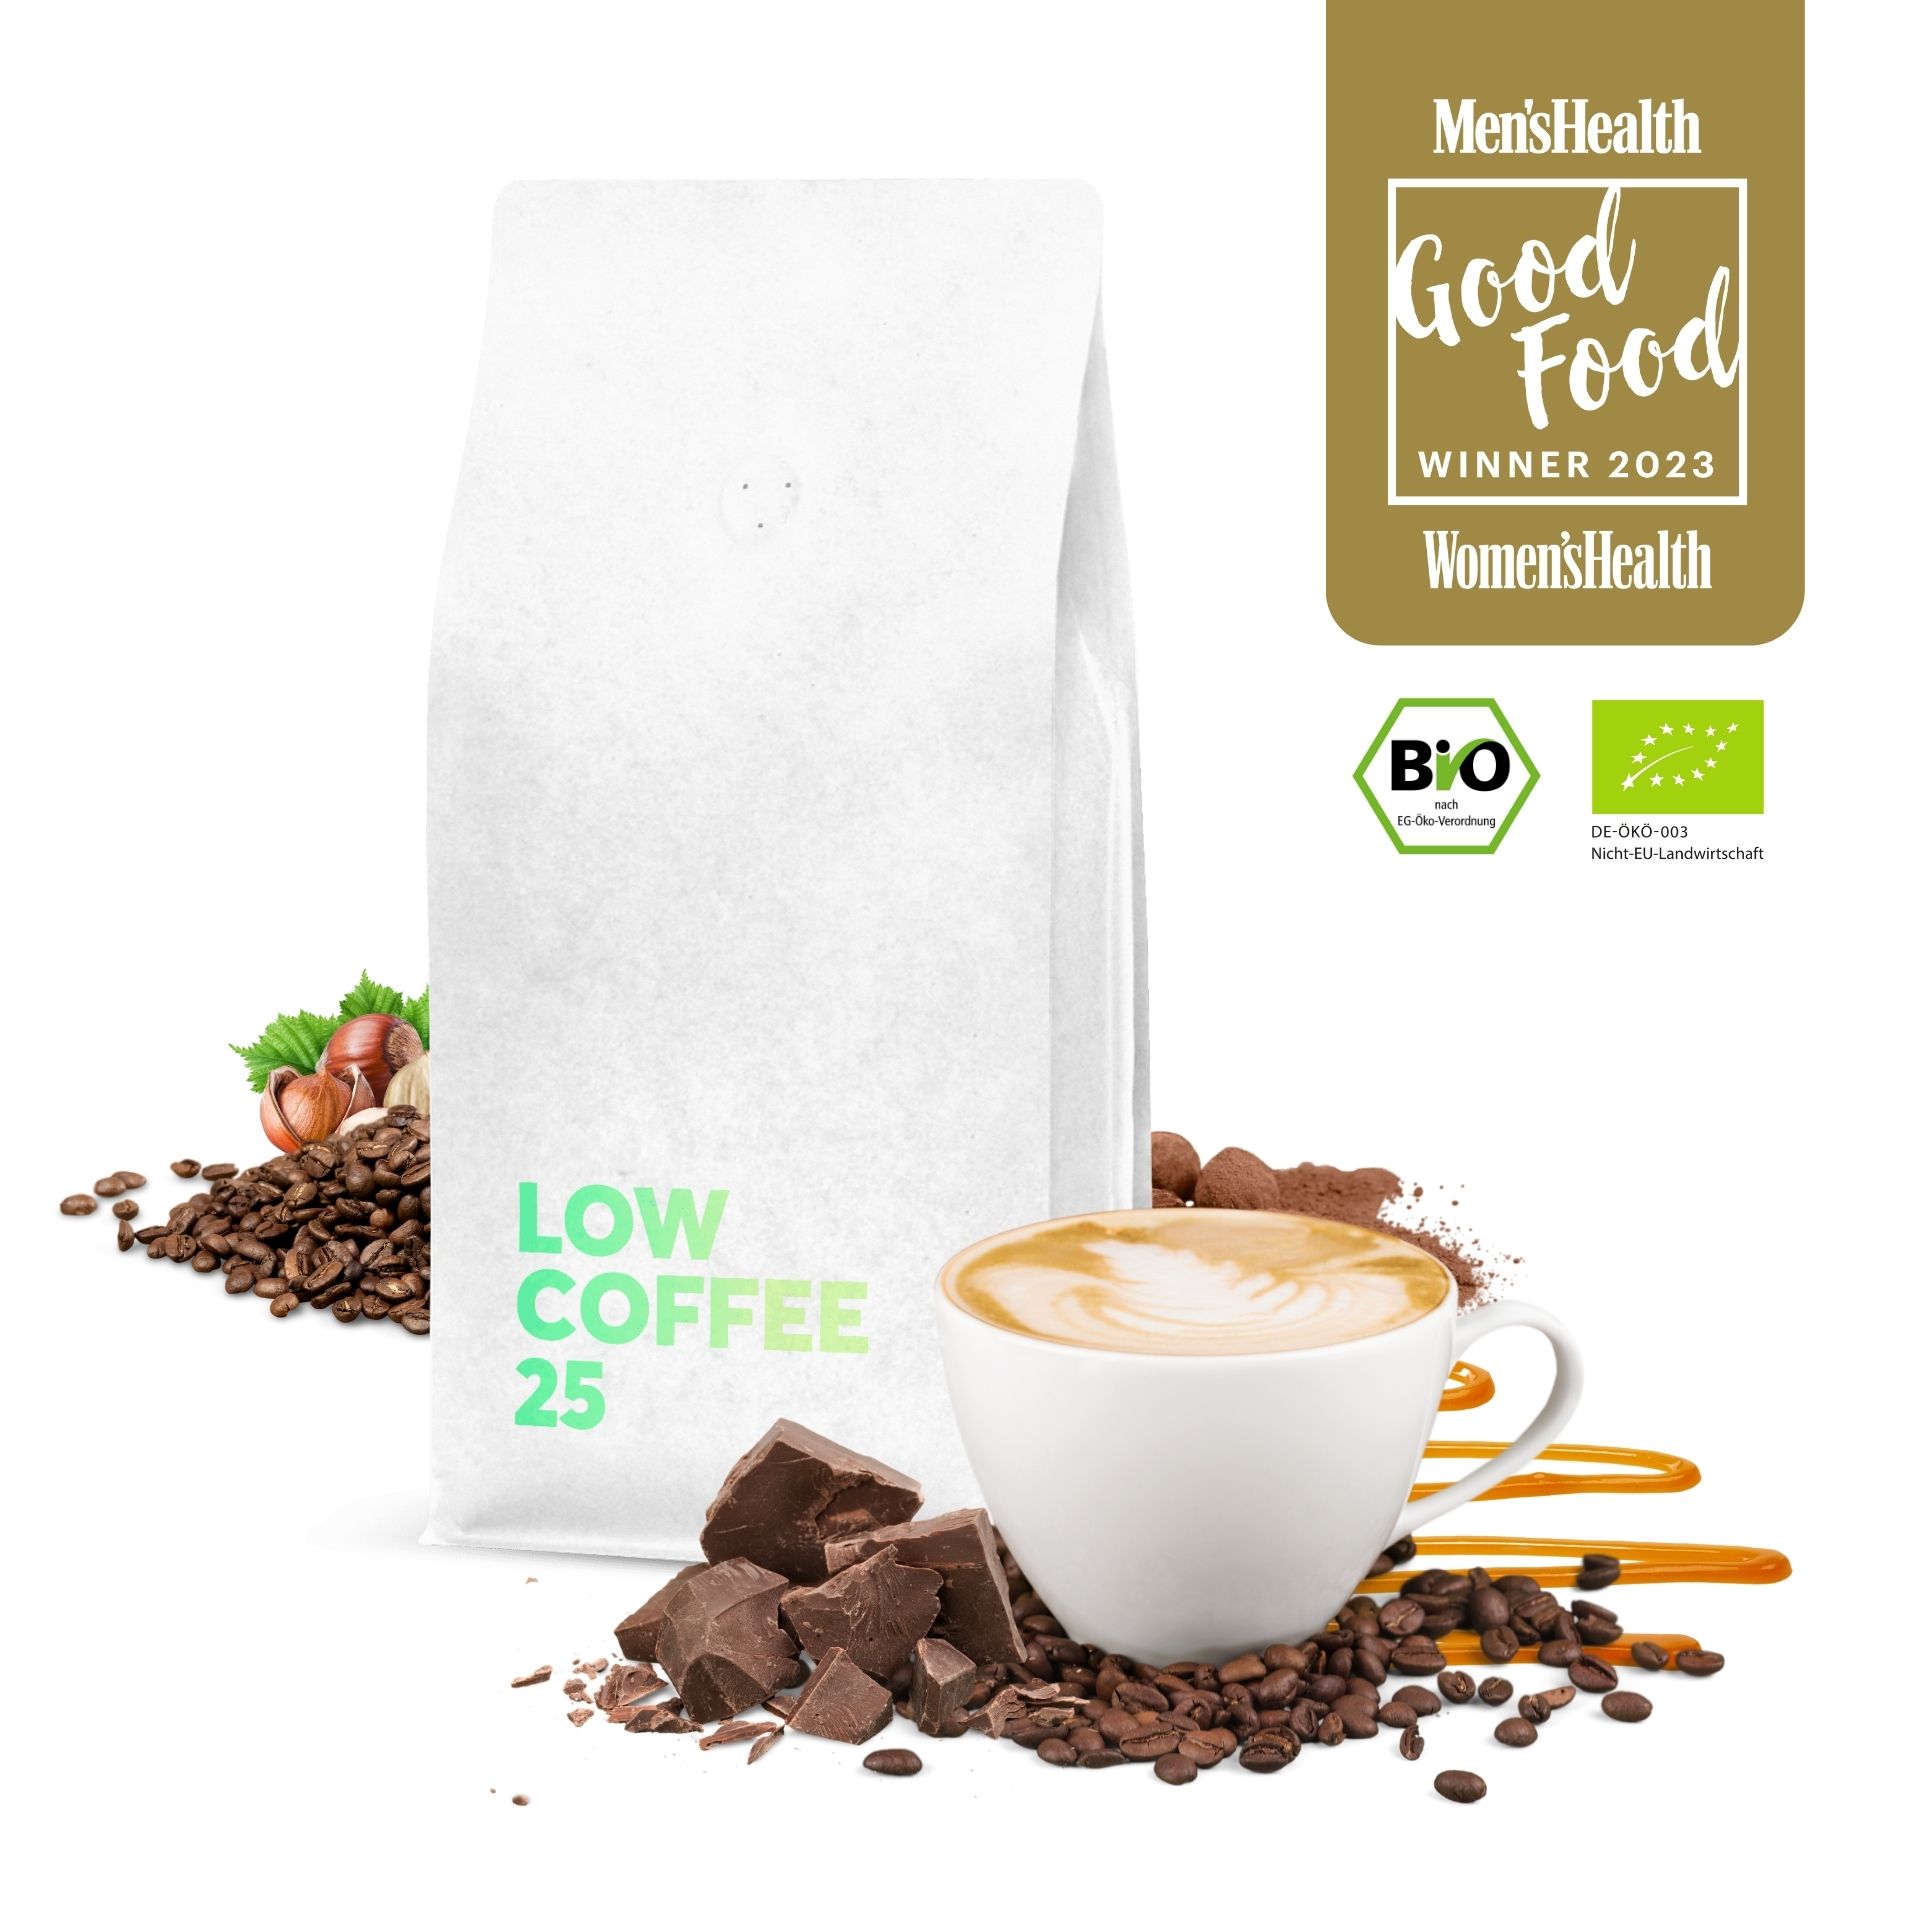 Low Coffee 25 ist Gewinner des Good Food Awards 2023 der Men's & Women's Health